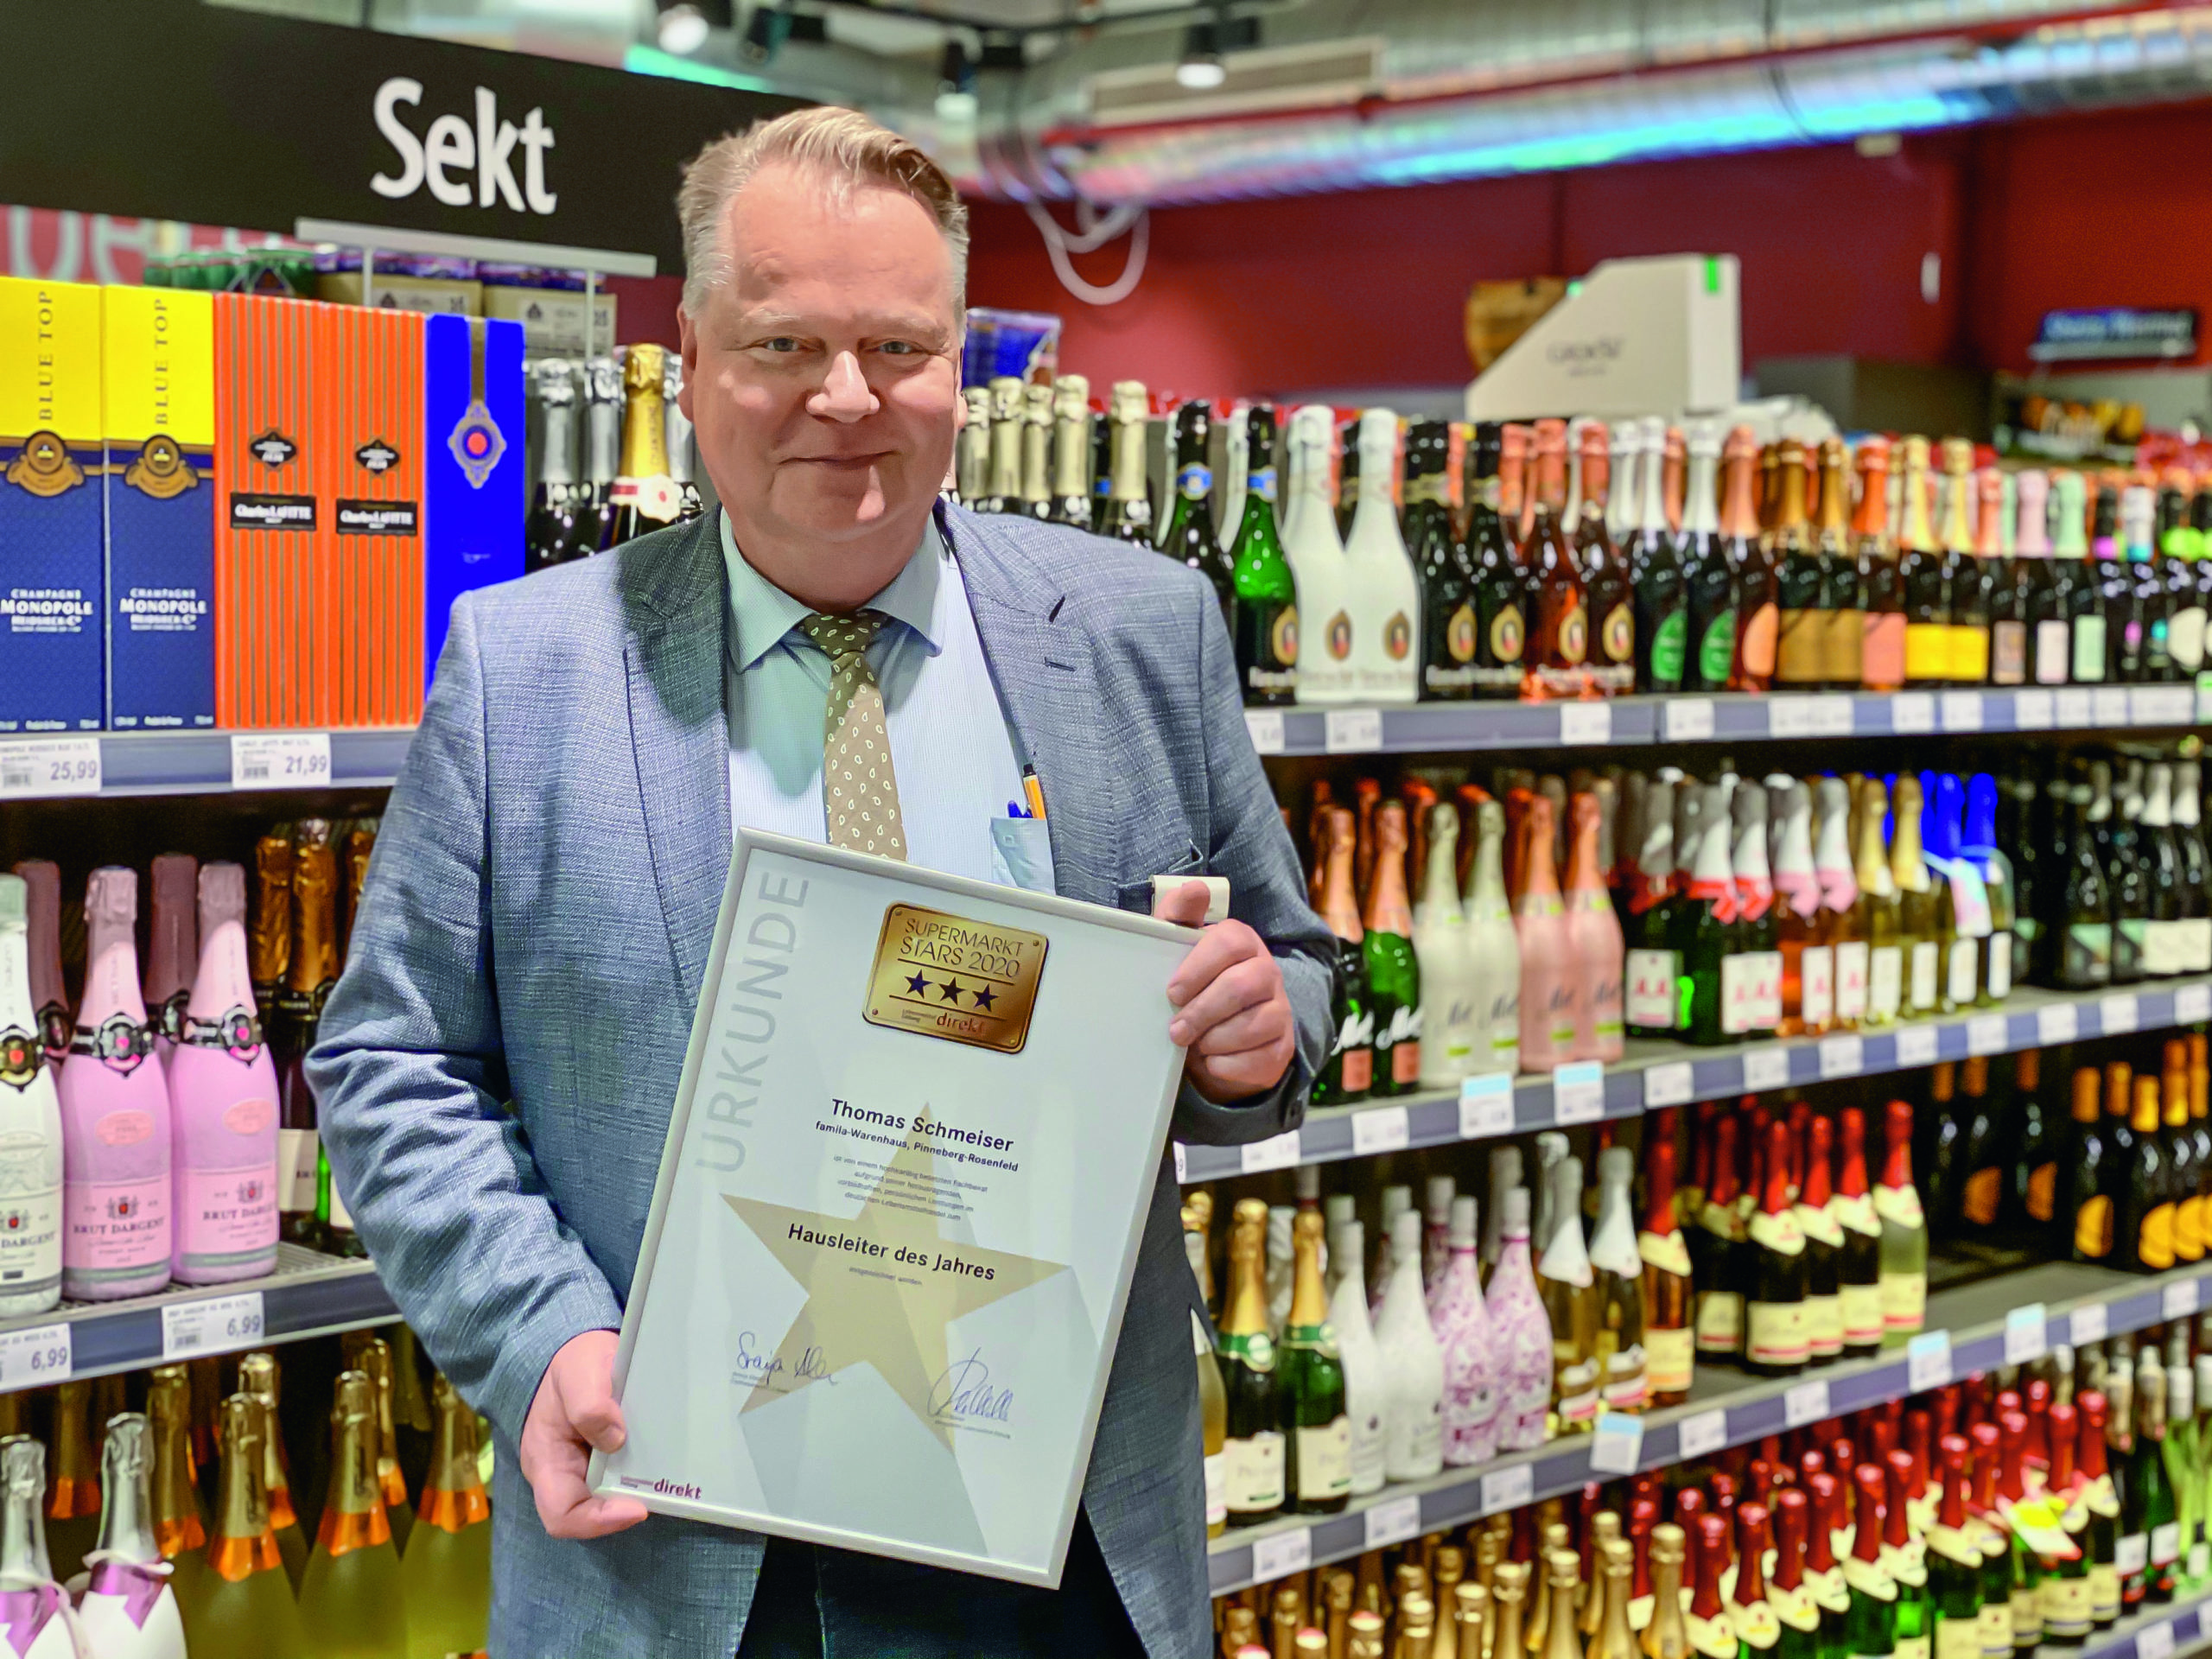 Supermarkt Stars 2020: famila-Warenhausleiter Thomas Schmeiser ausgezeichnet